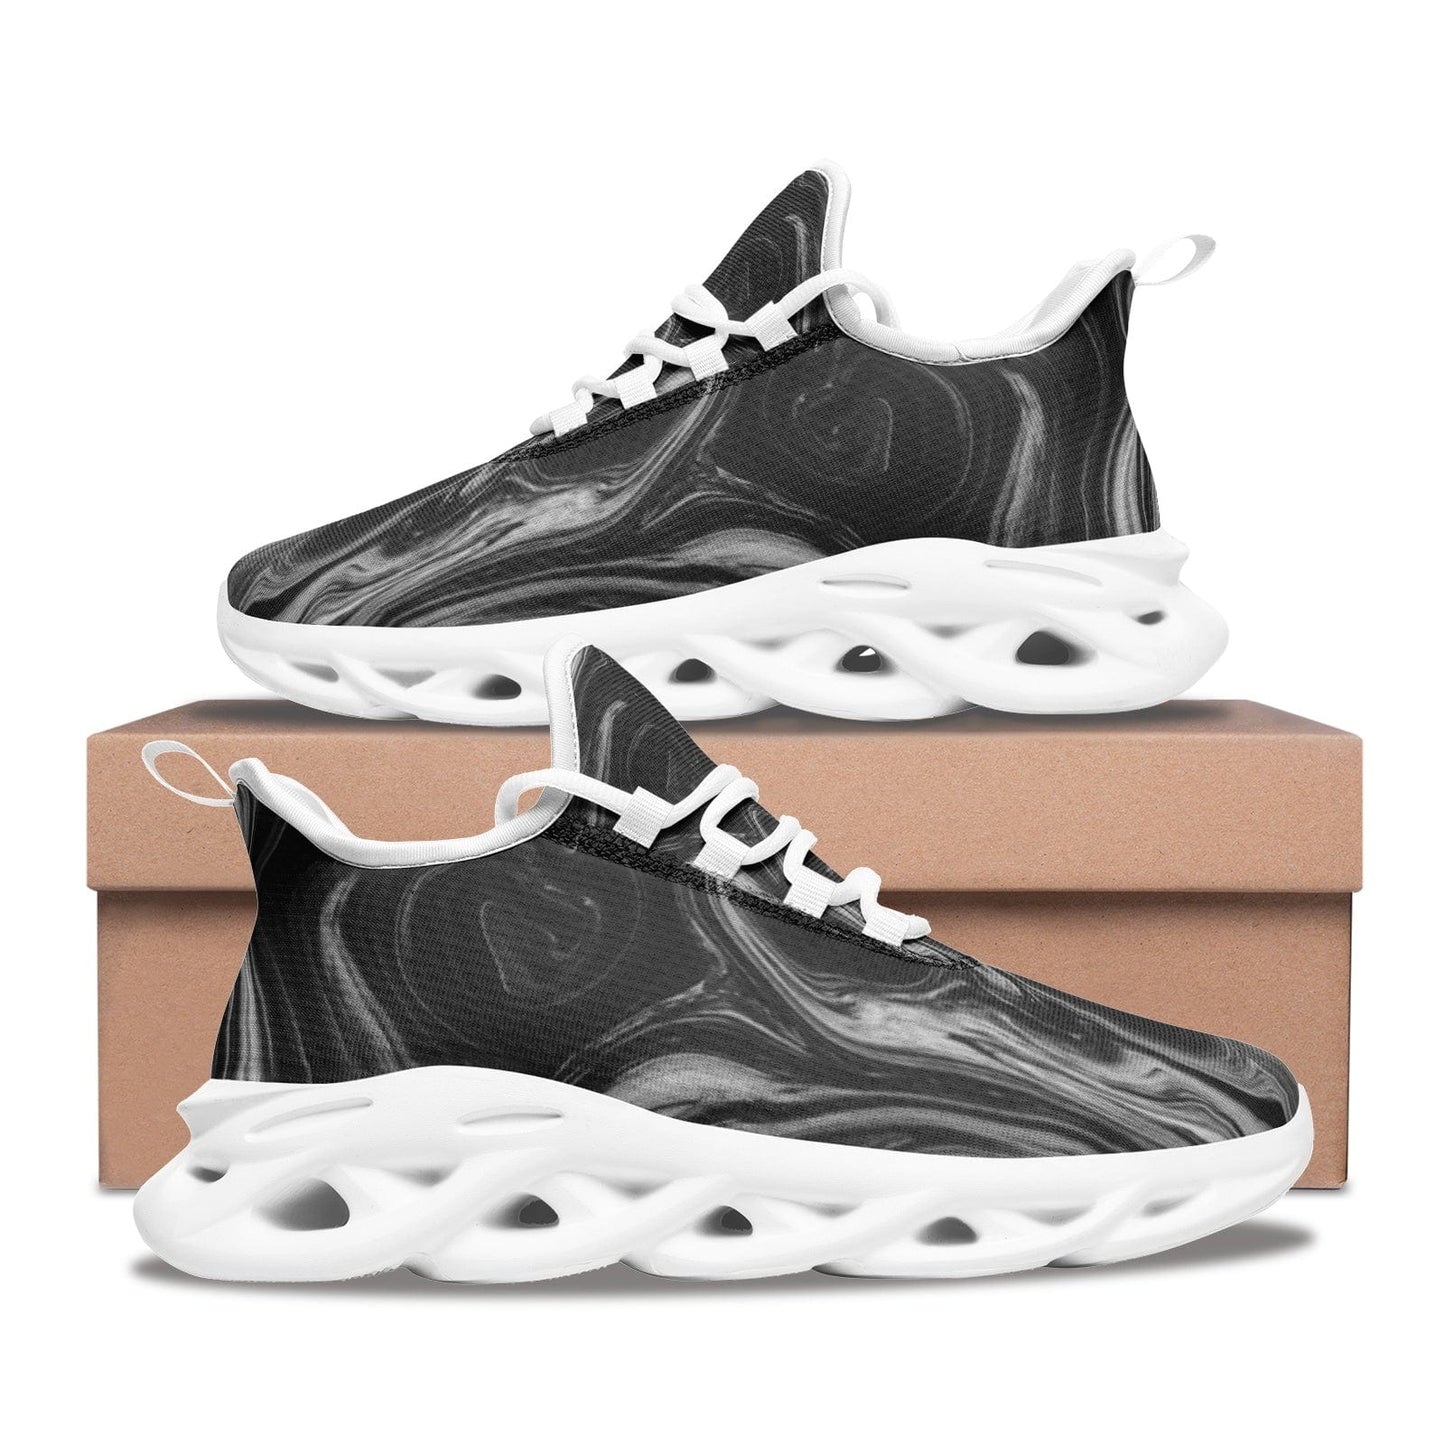 Unisex Bounce Mesh Knit Sneakers - Mode, Schuhe & Taschen online kaufen - Koolo.de